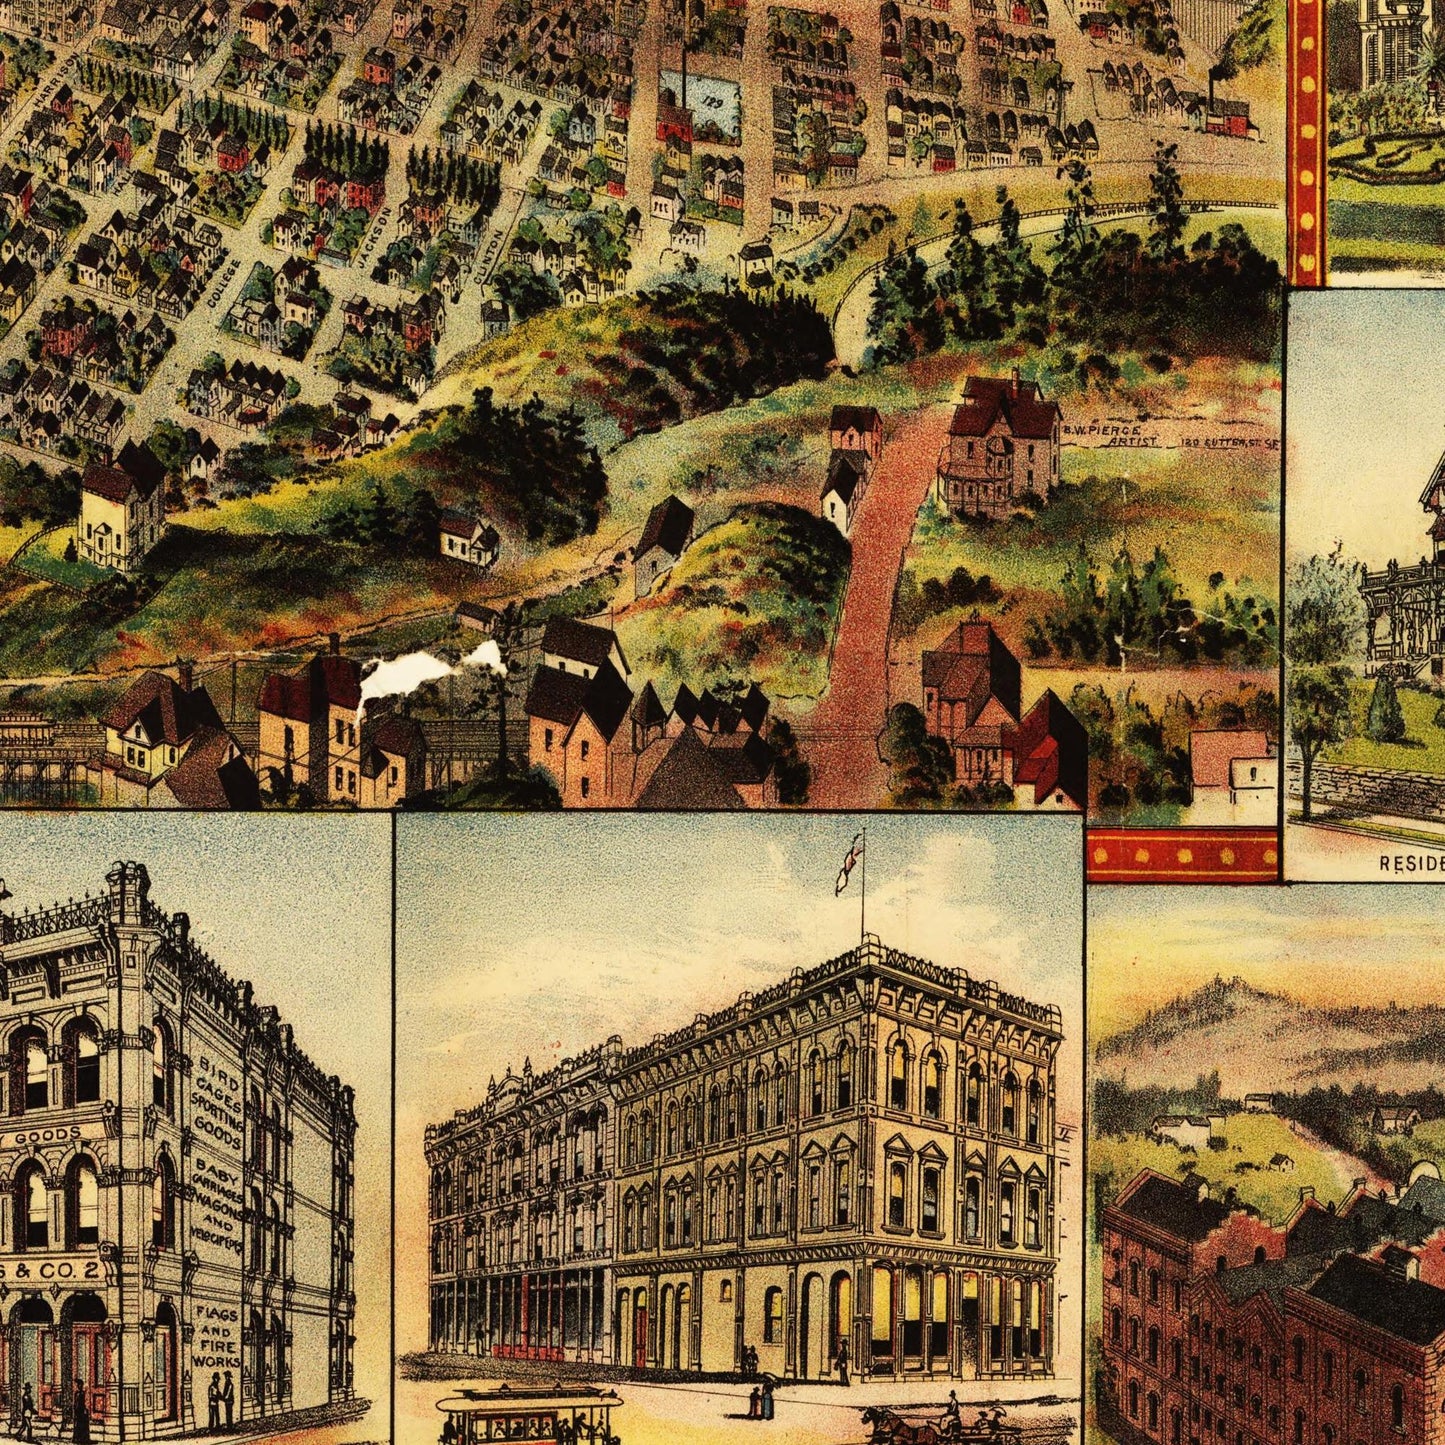 Historische Stadtansicht Portland um 1890